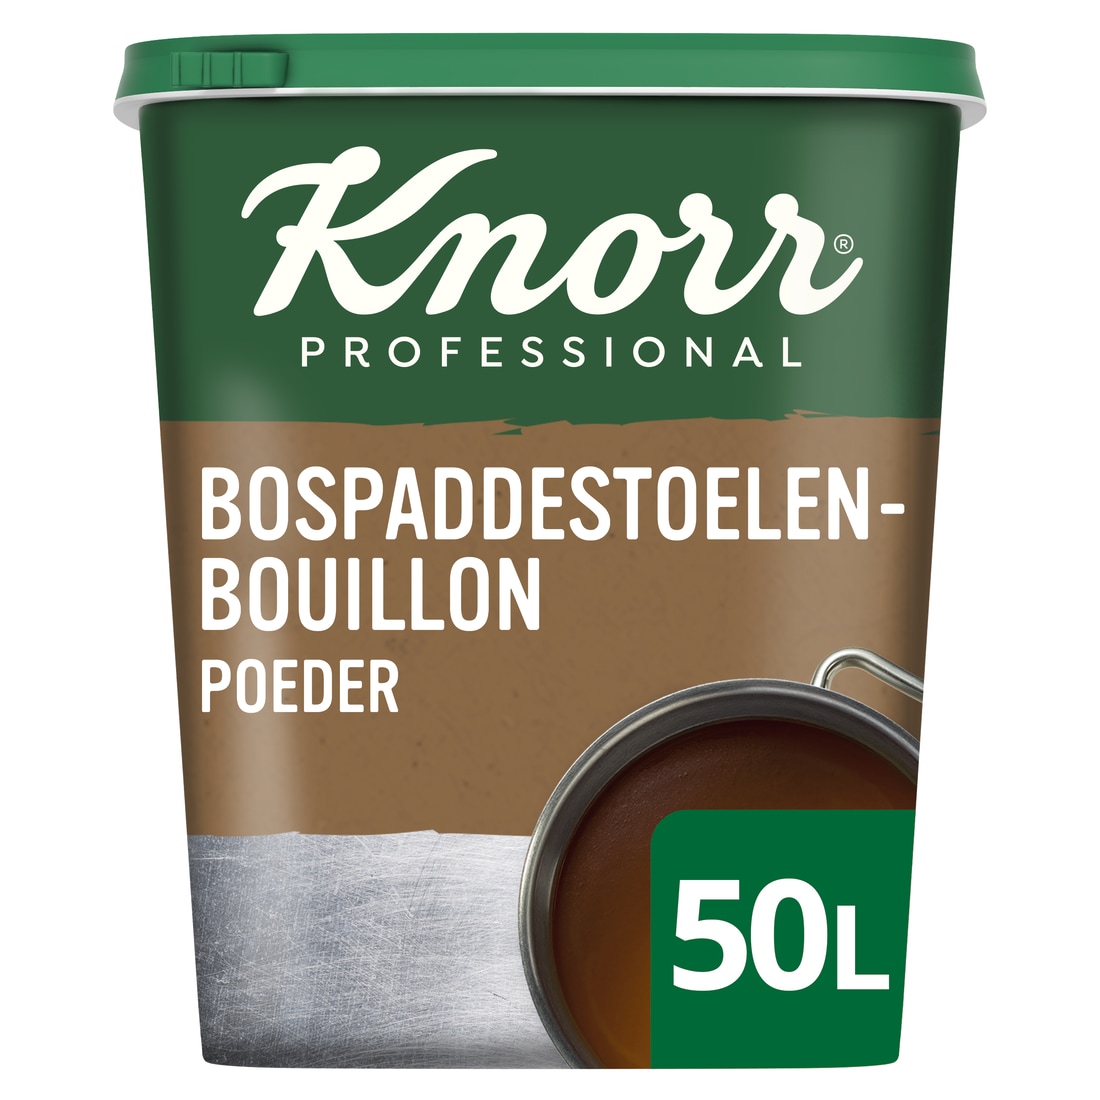 Knorr Bospaddenstoelenbouillon Authentiek Poeder opbrengst 50L - 